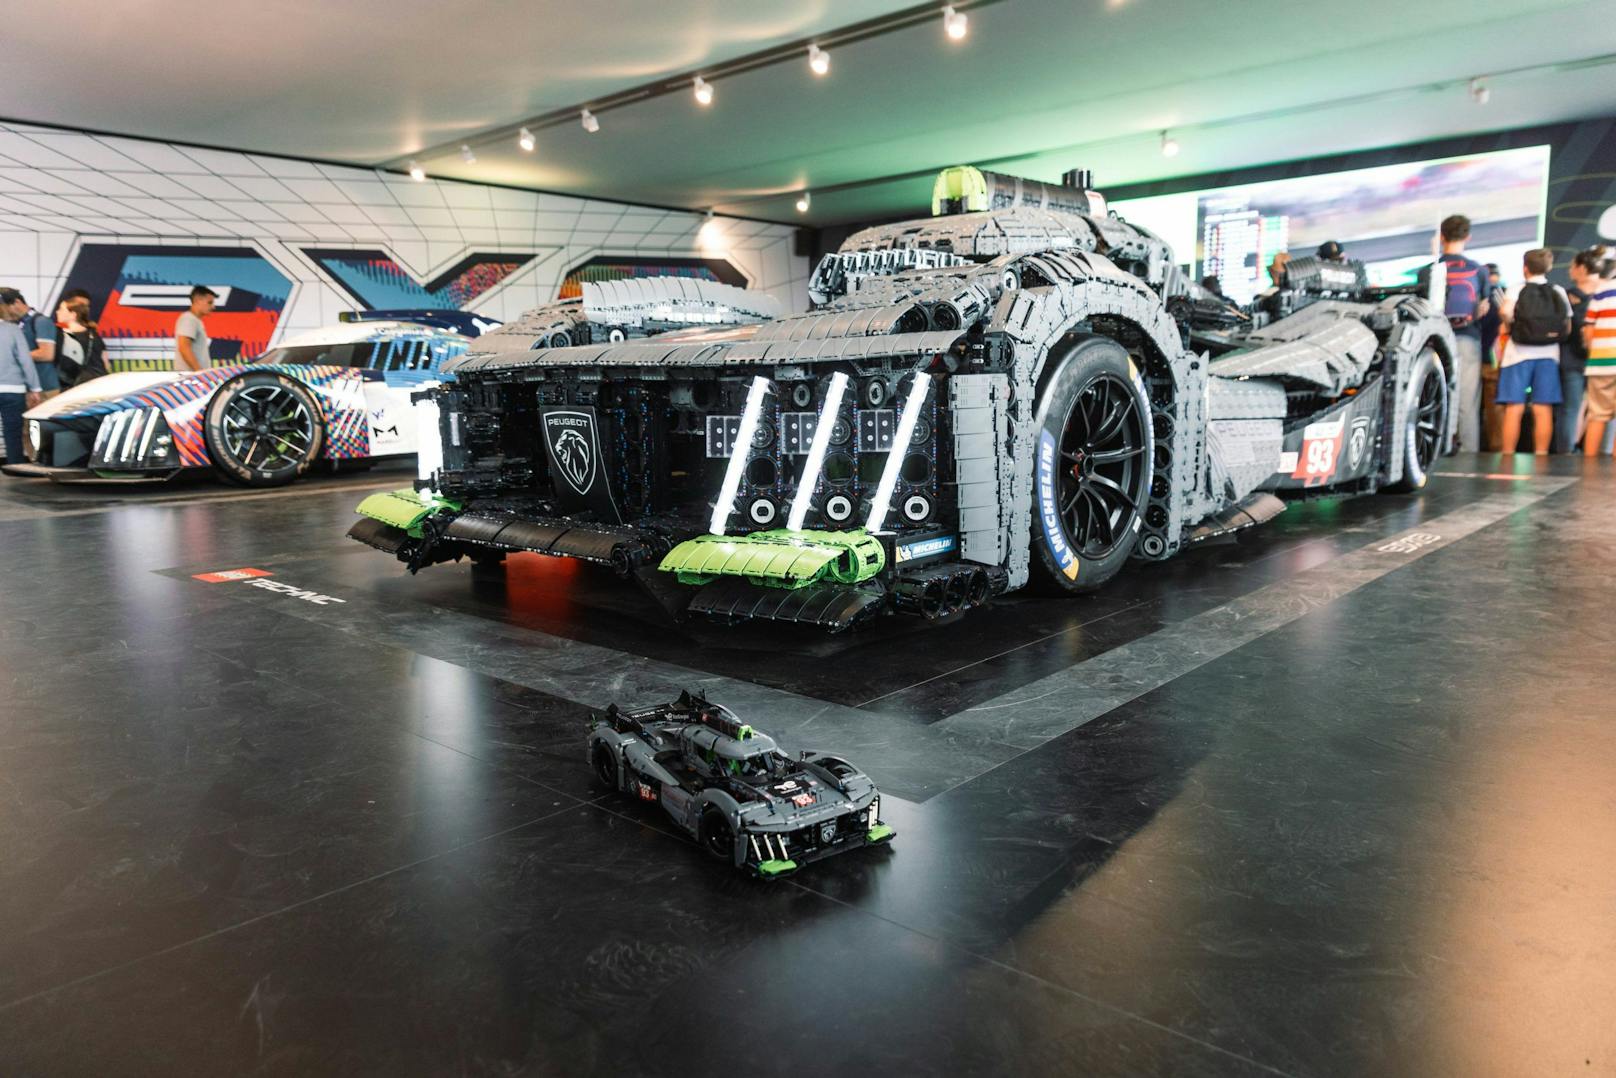 626.392 Teile, 5,20 Meter lang, 2,20 Meter breit und 1,36 Meter hoch und über 900 Kilo: der Le Mans Hybrid Hypercar Nachbau.